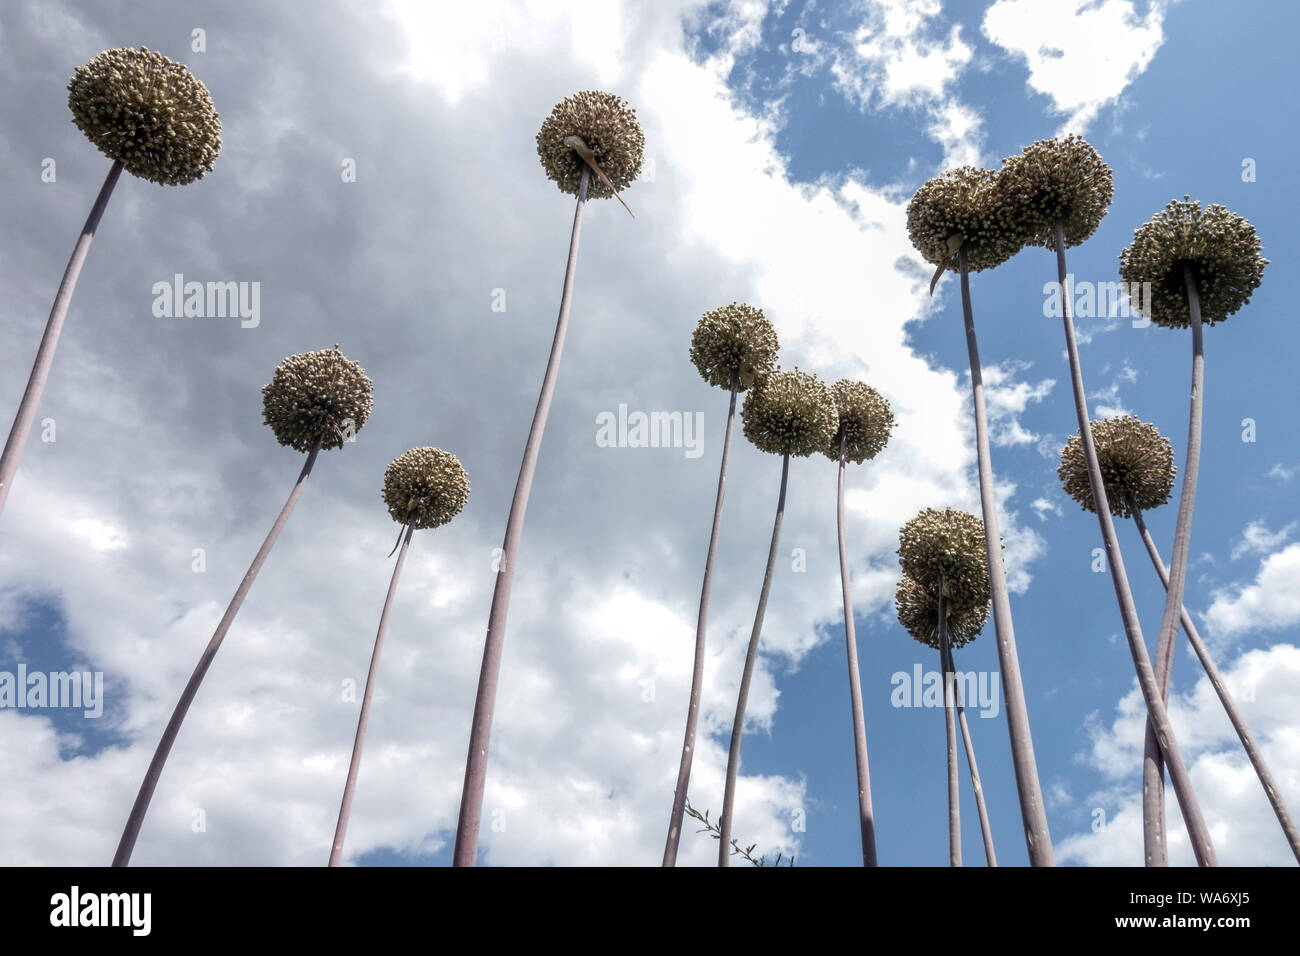 Allium 'Summer Drummer', flower heads on dry stems against sky Stock Photo